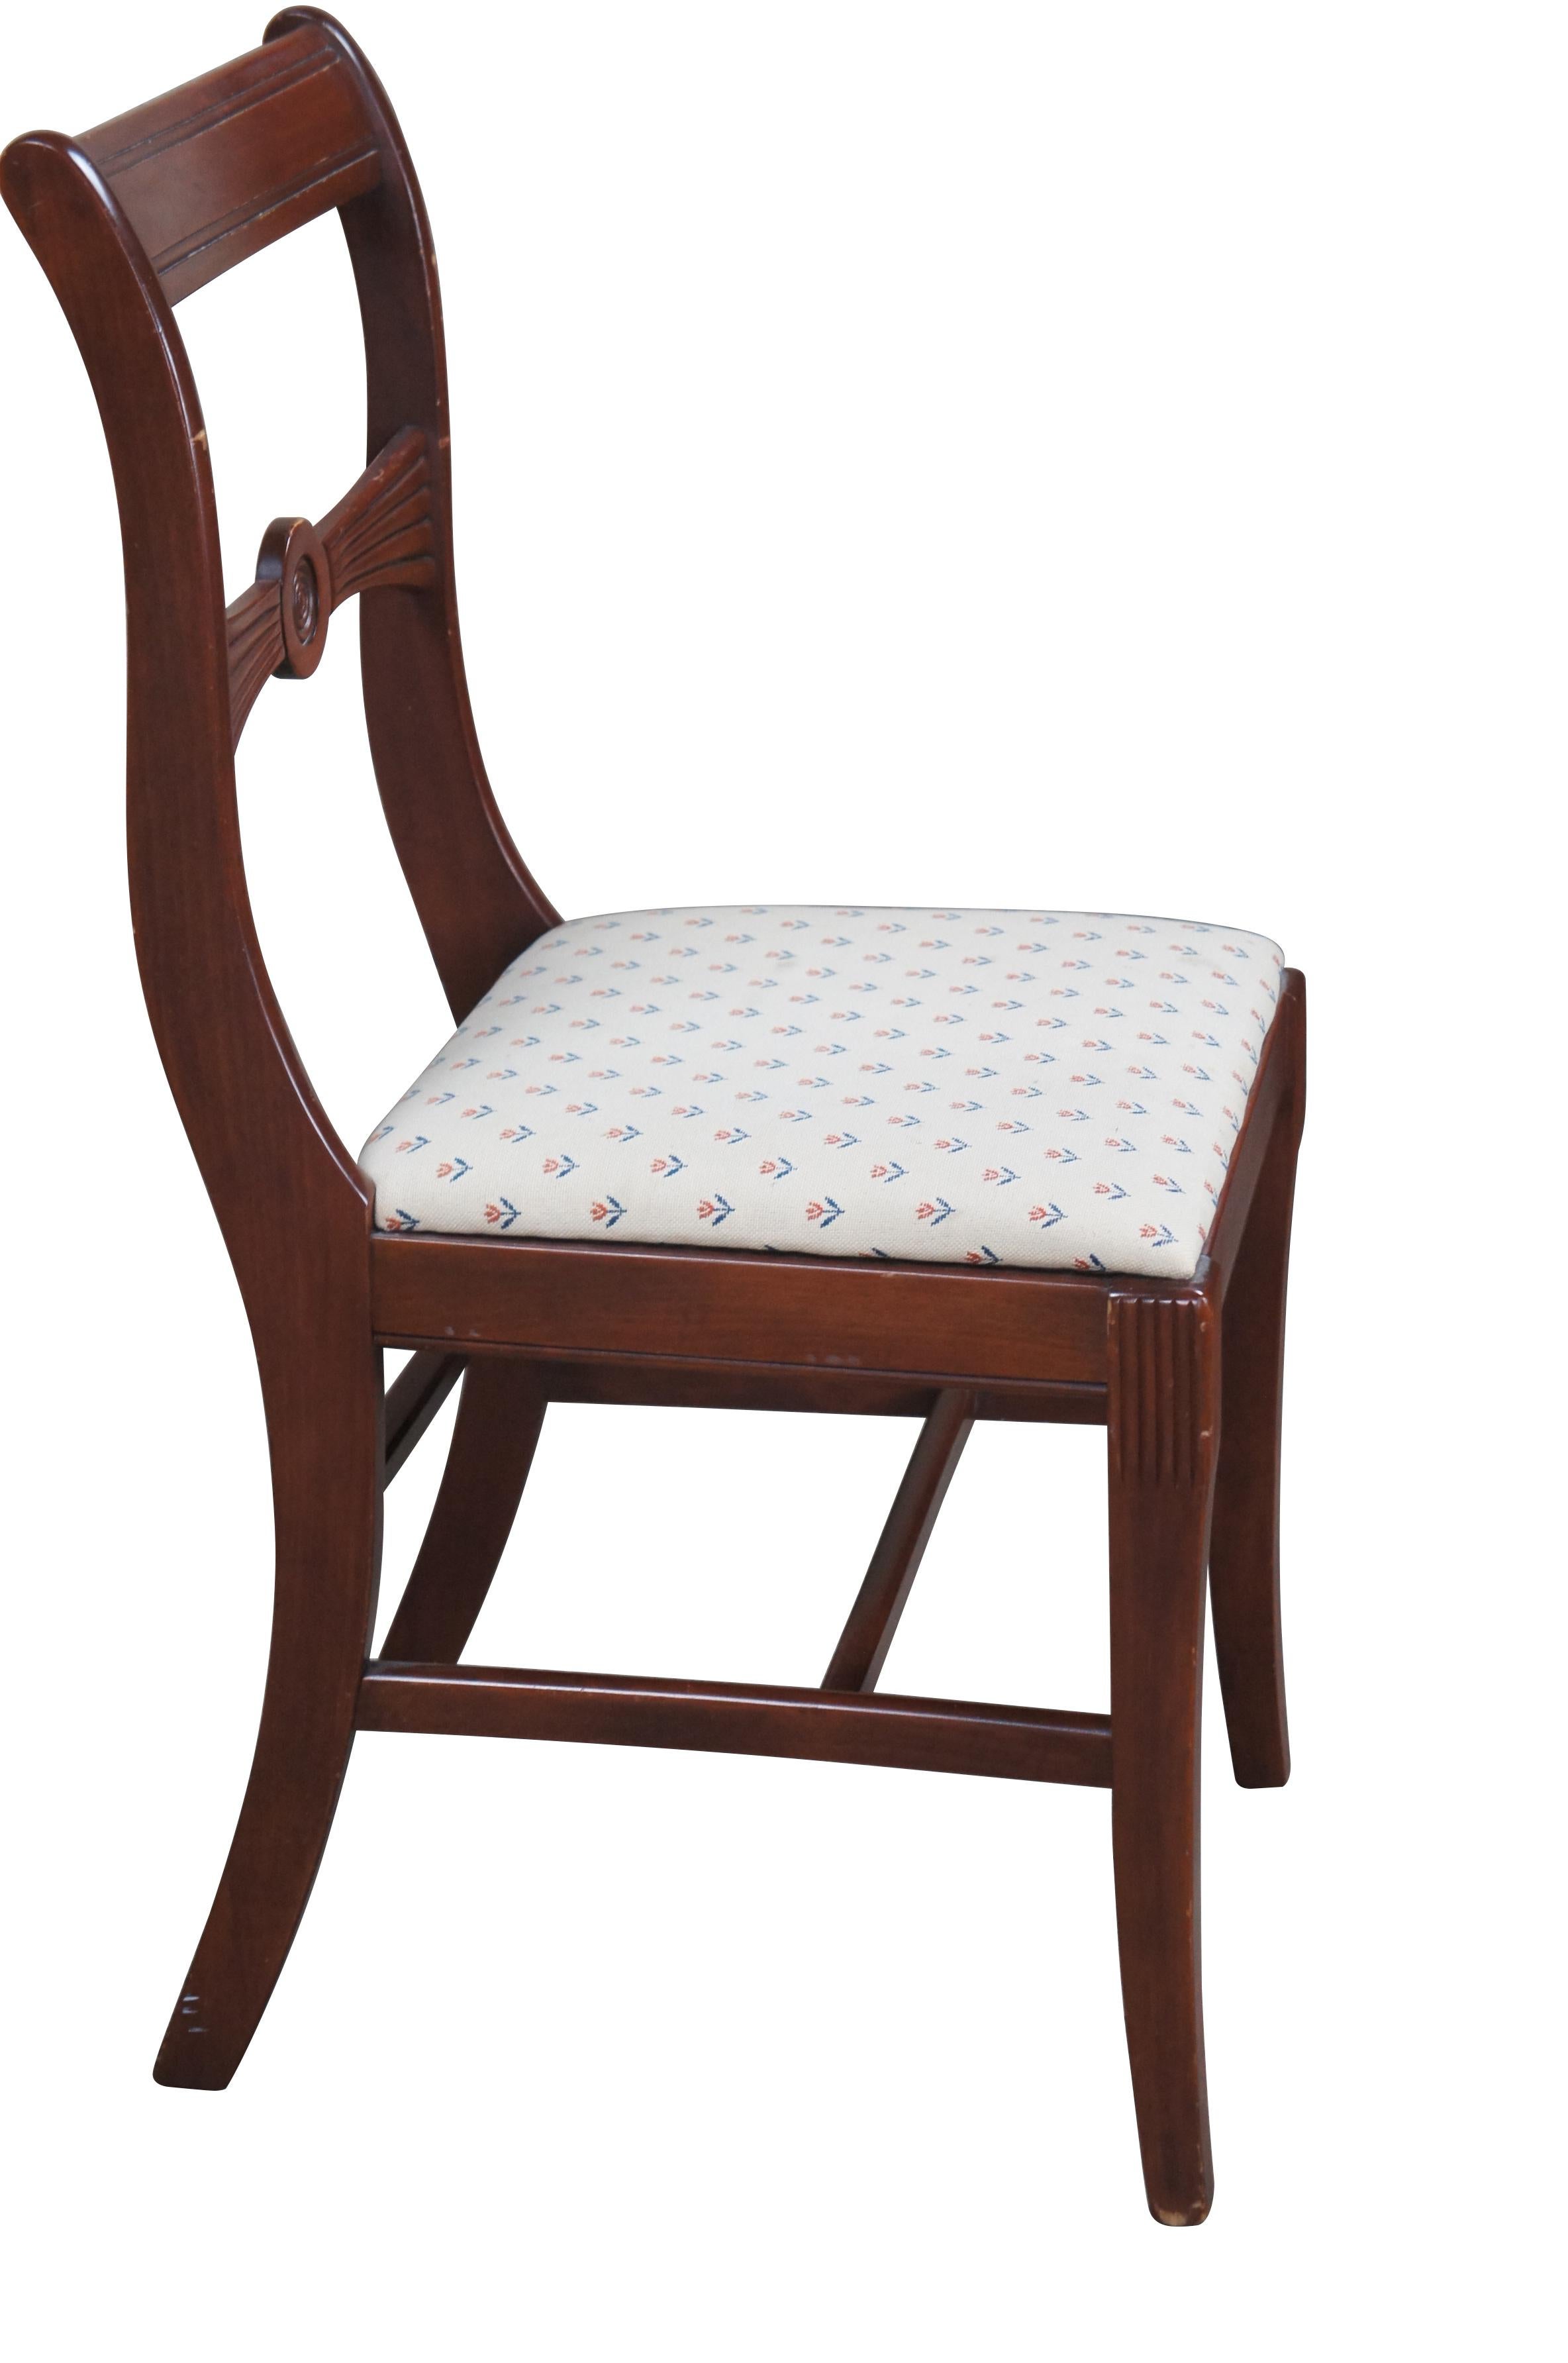 Duncan Phyfe / Regency Style Esszimmerstuhl aus den 1940er Jahren.  Hergestellt aus Mahagoni mit einer konturierten Kammschiene und einer bogenförmigen Rückenlehne.  Mit einem gepolsterten Sitz mit sich wiederholendem Tulpen-/Rosenmuster.  Die